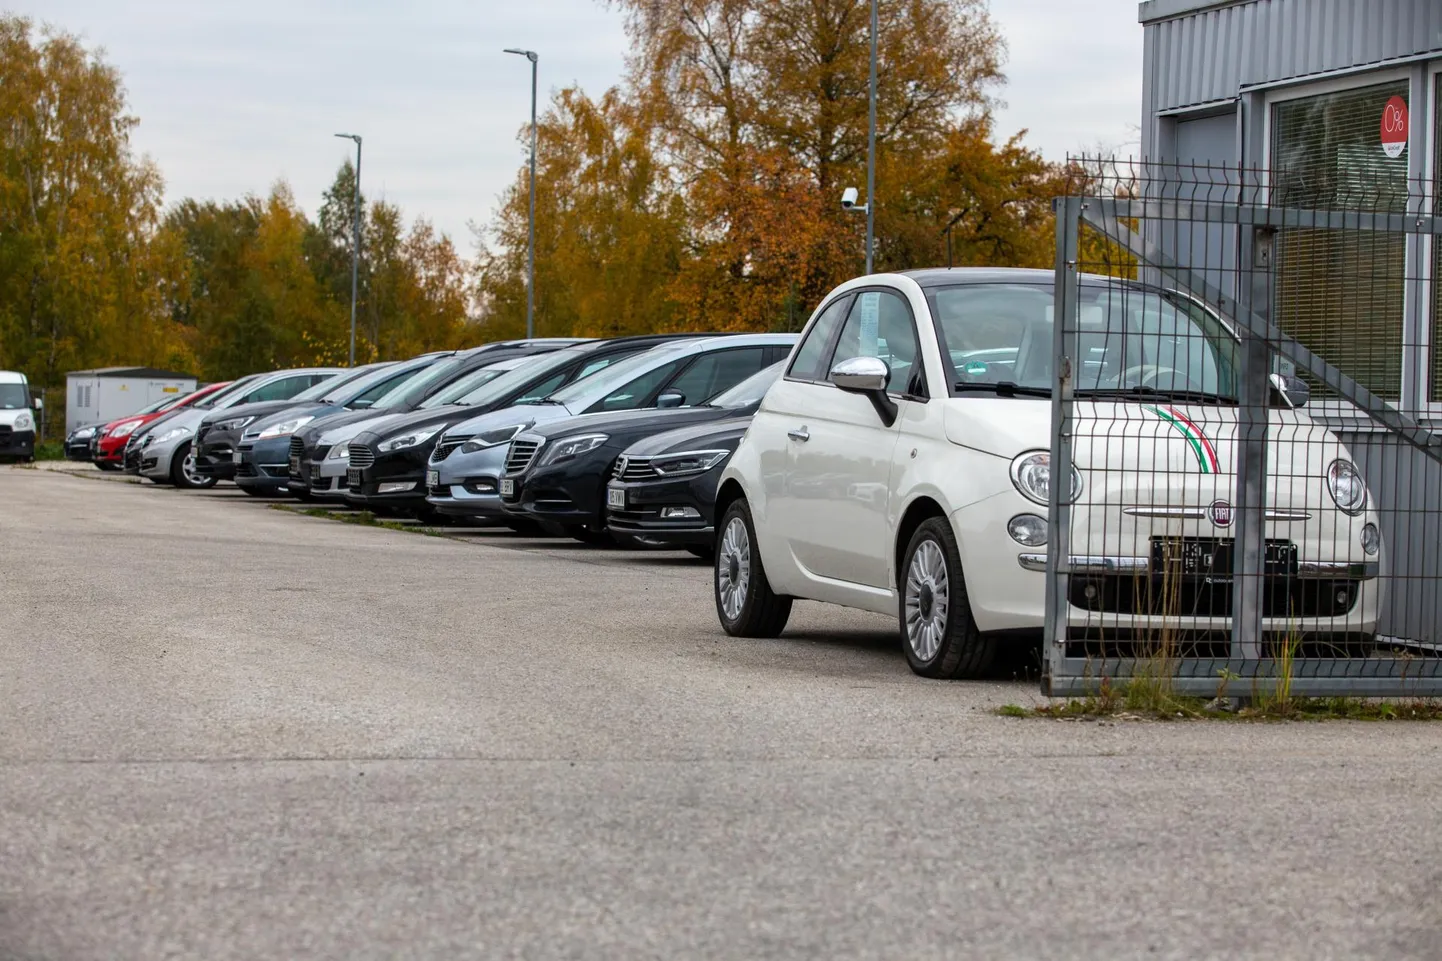 Kliimaministeerium leiab, et Eesti keskkonnaeesmärkide saavutamise nimel võiks keelata kasutatud autode sisseveo.